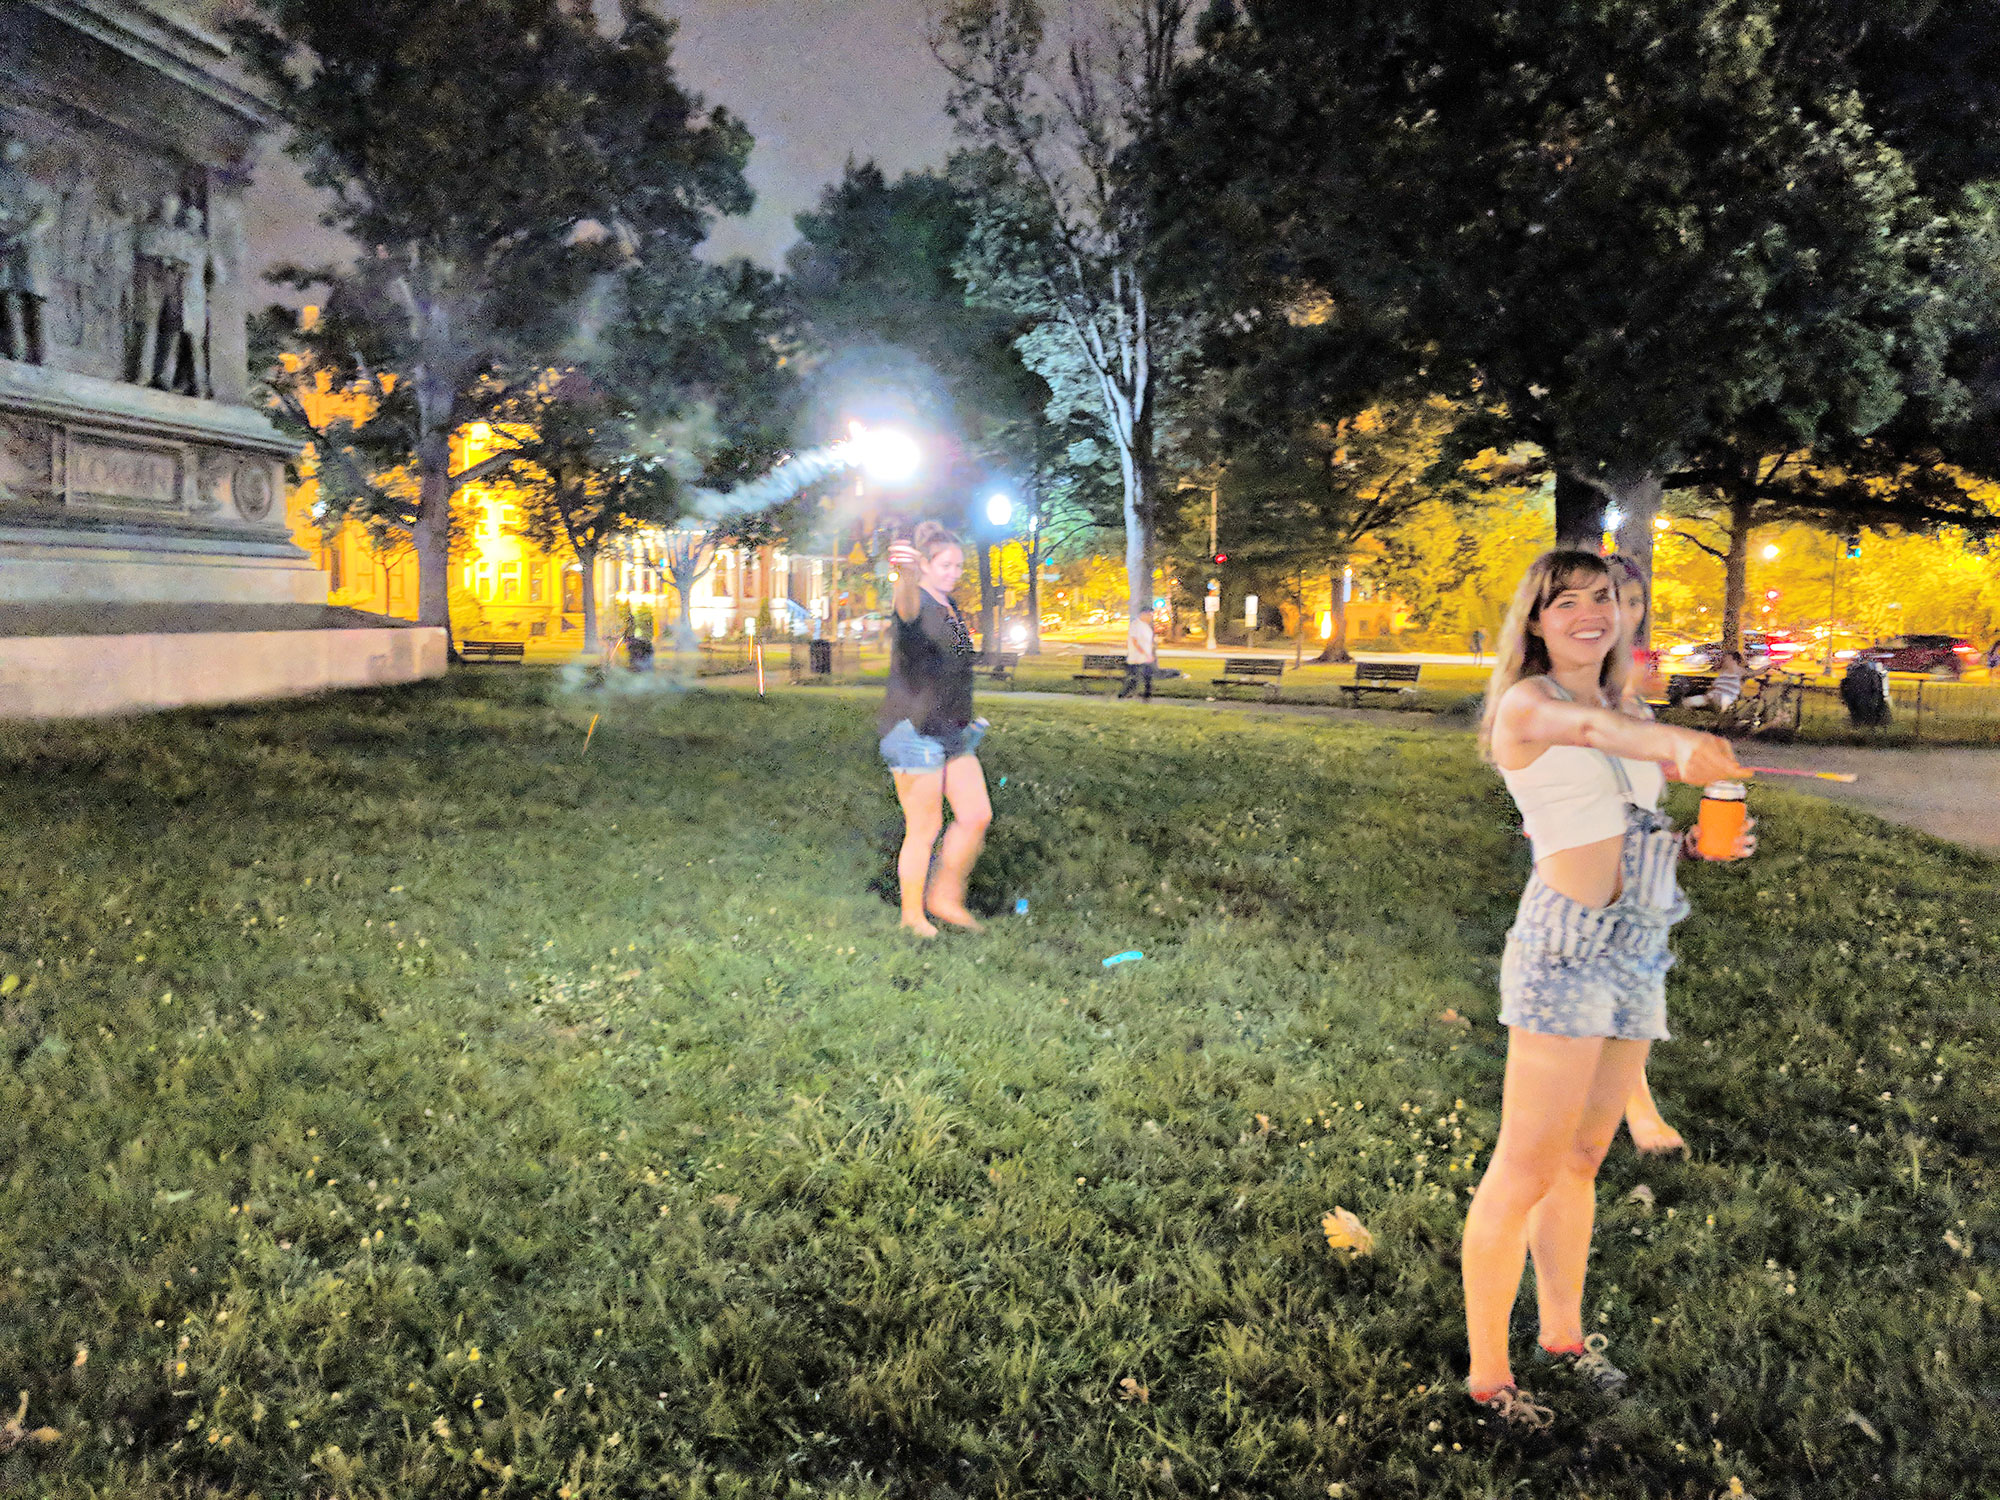 Women lighting fireworks in Logan Circle, Washington D.C.